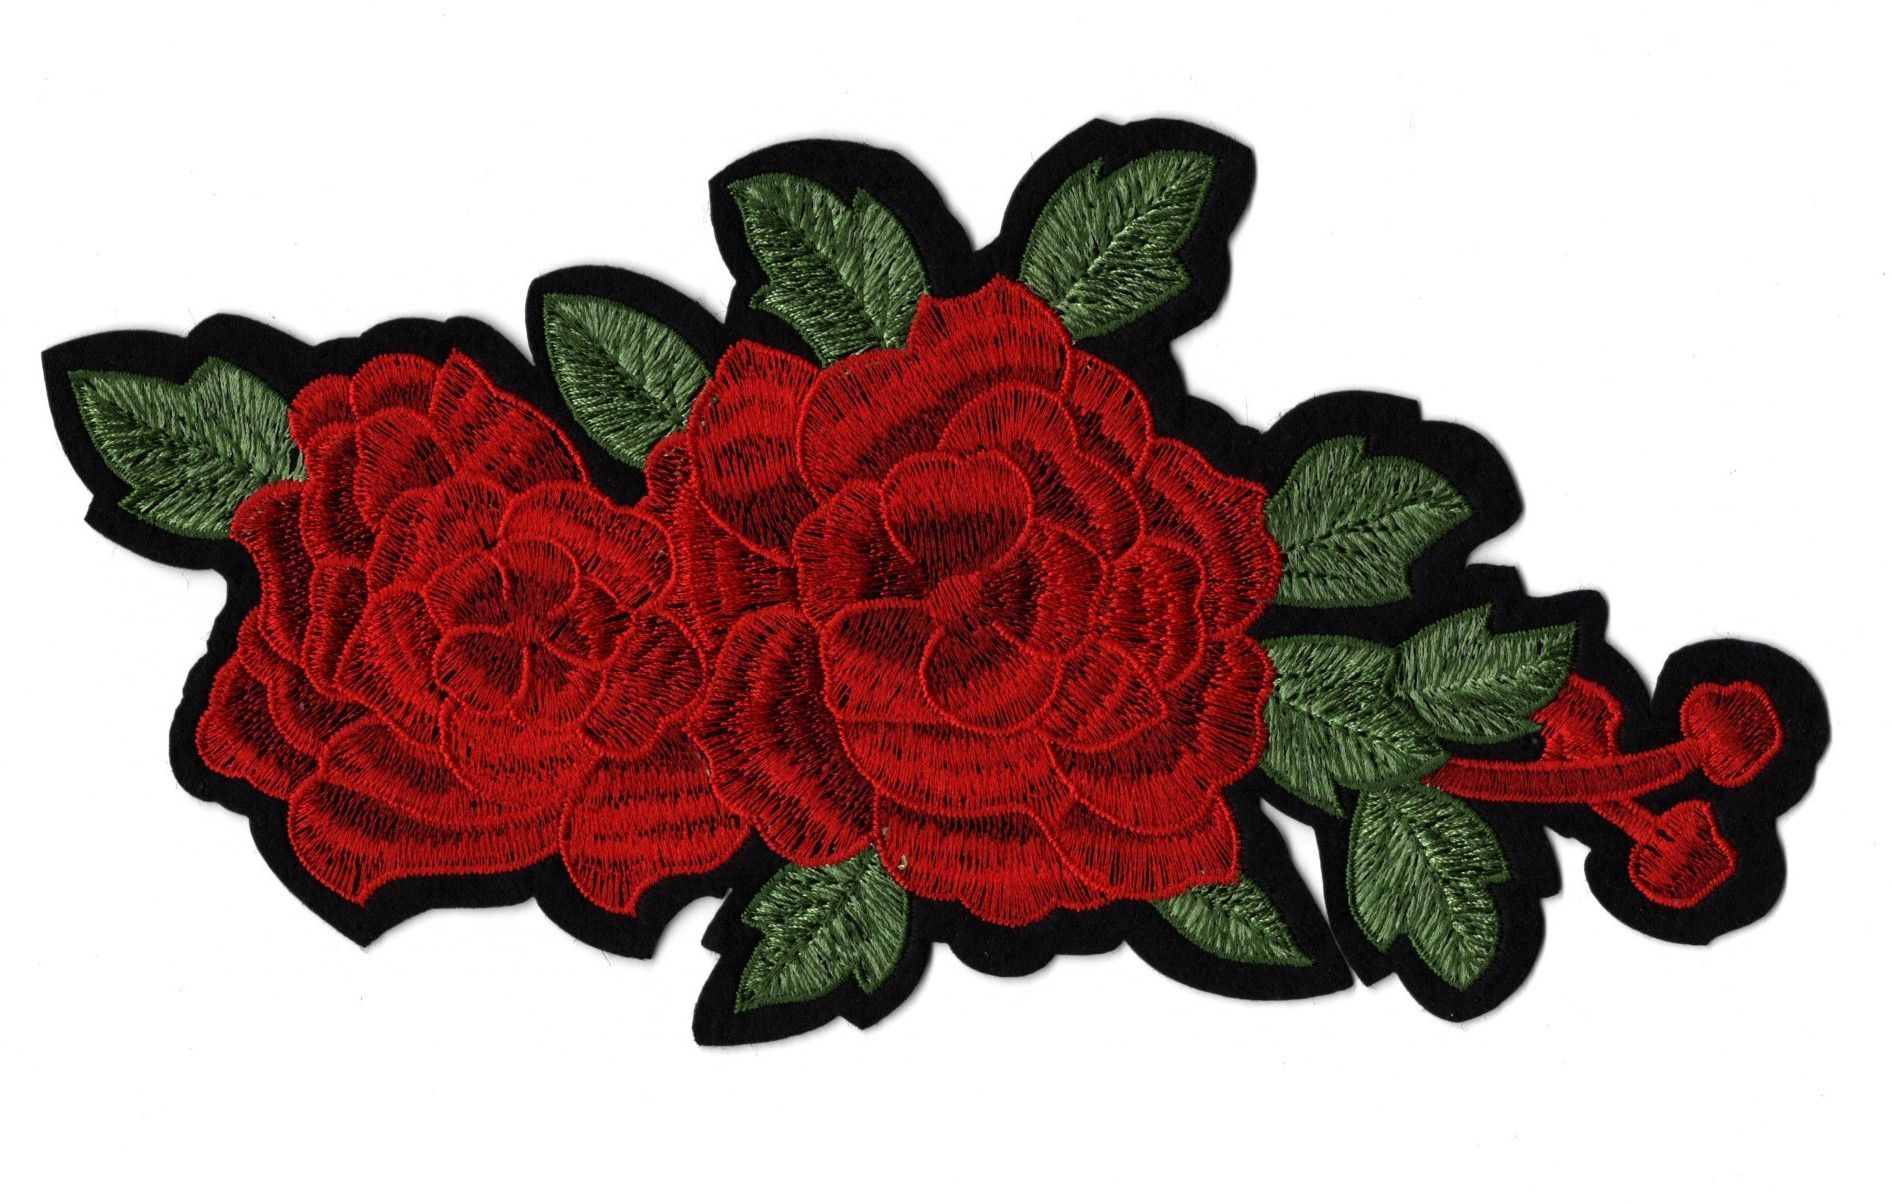 Ecusson brodé et paillette rose rouge - Créa'tissus St Gaudens 